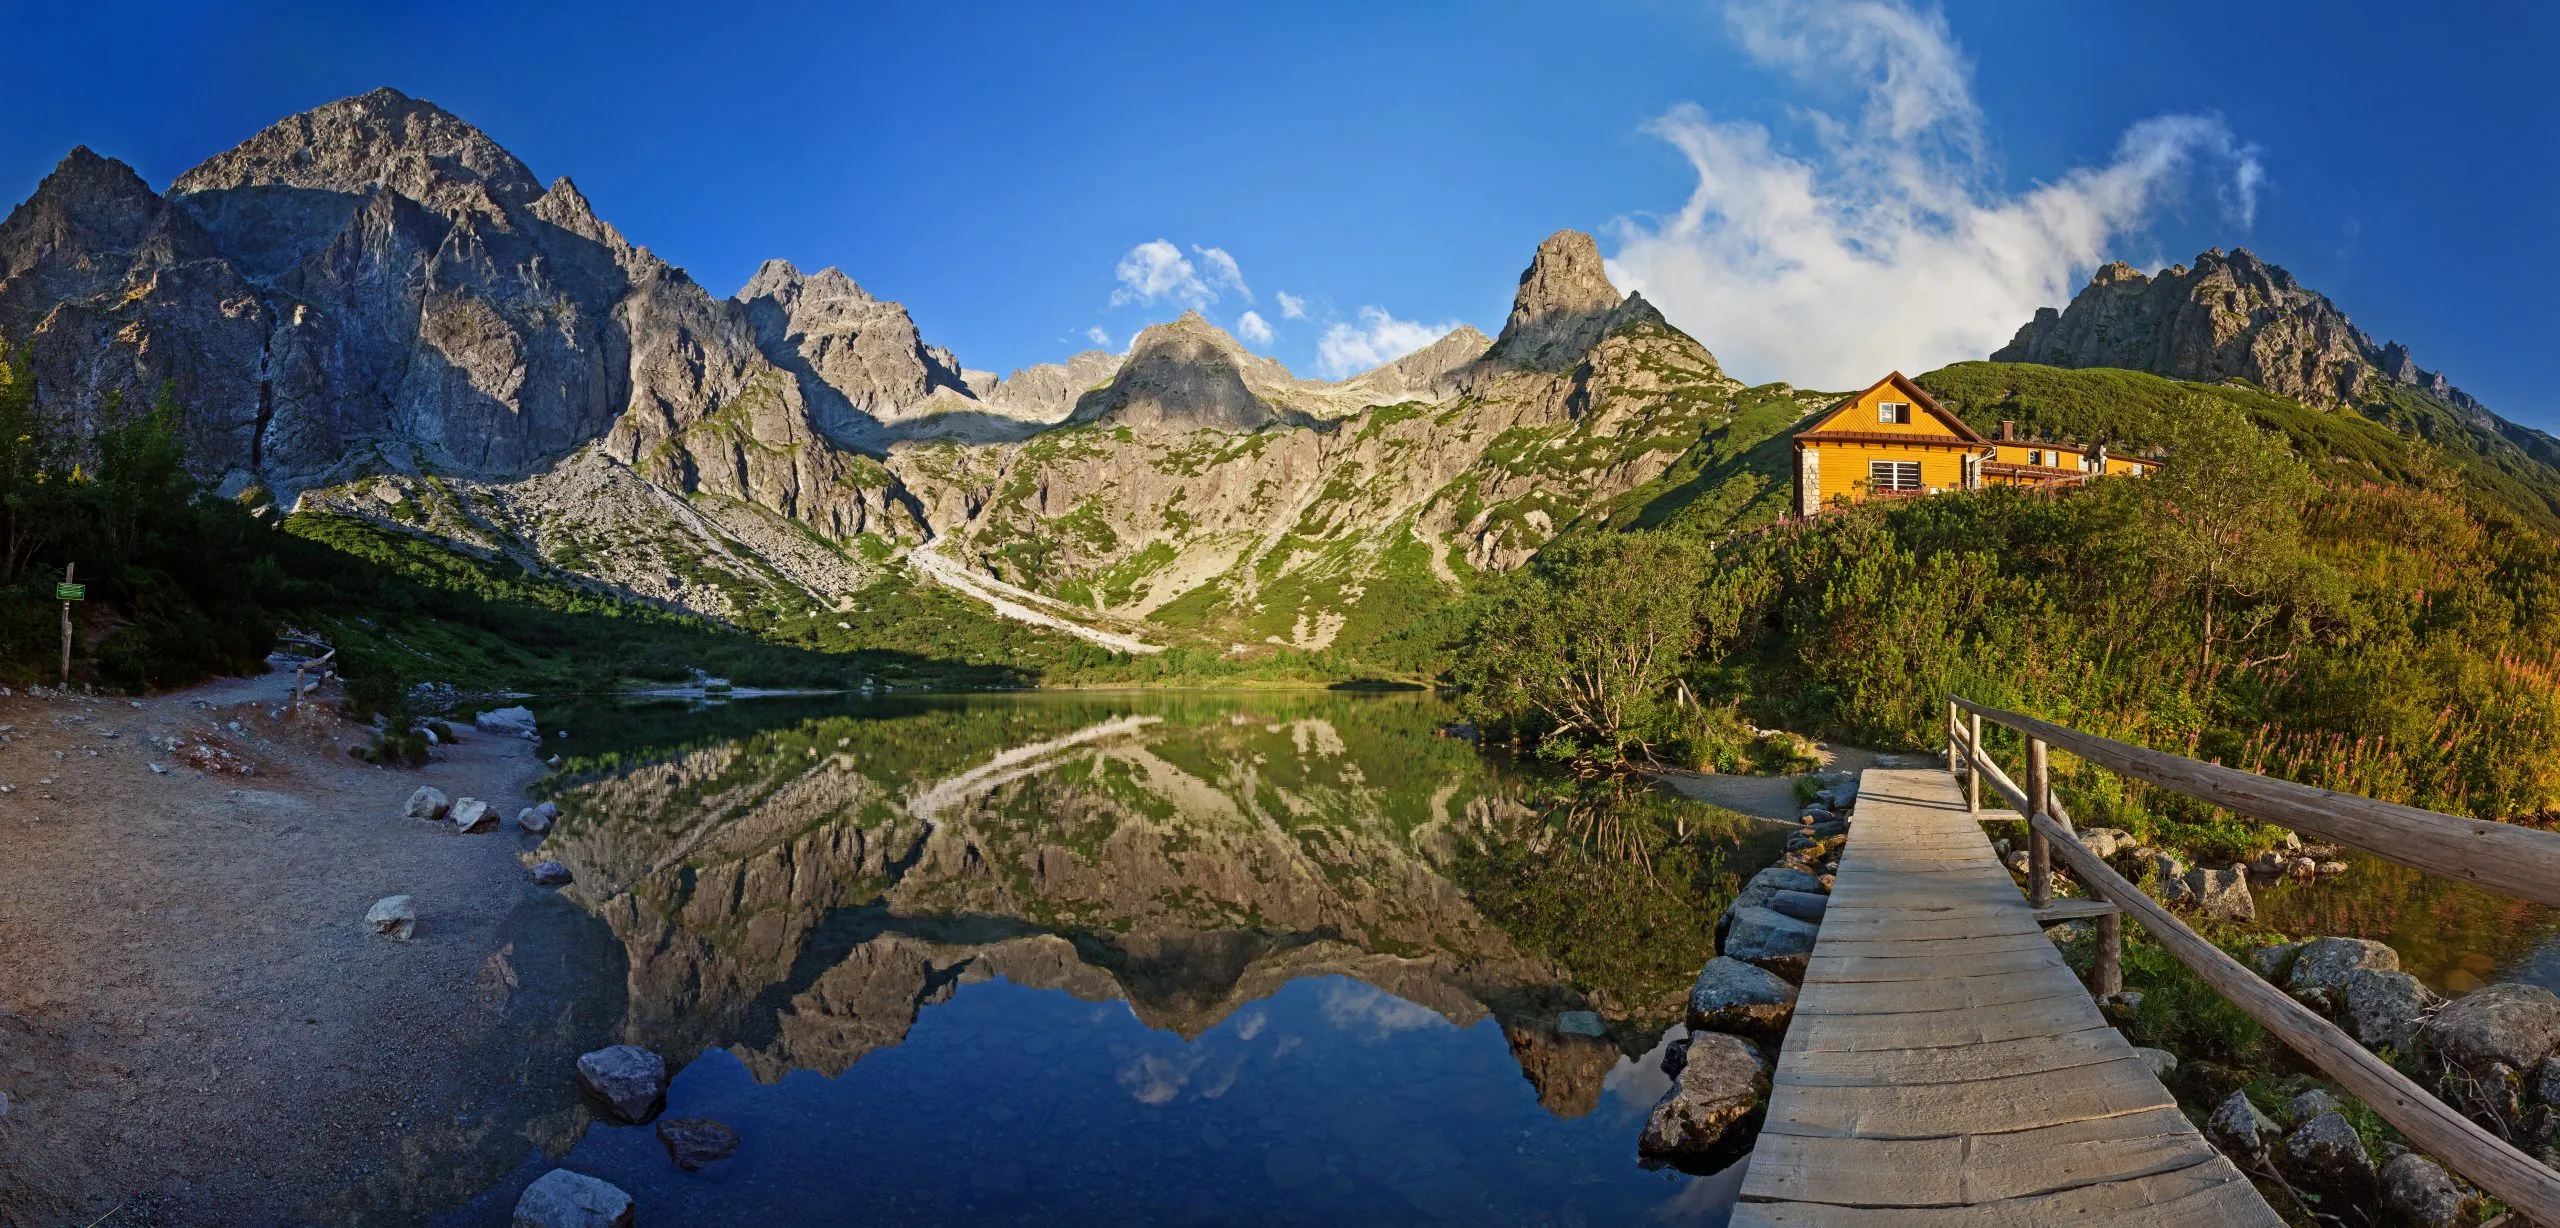 Panorama del valle del lago Zelene pleso en los montes Tatra, Eslovaquia, Europa